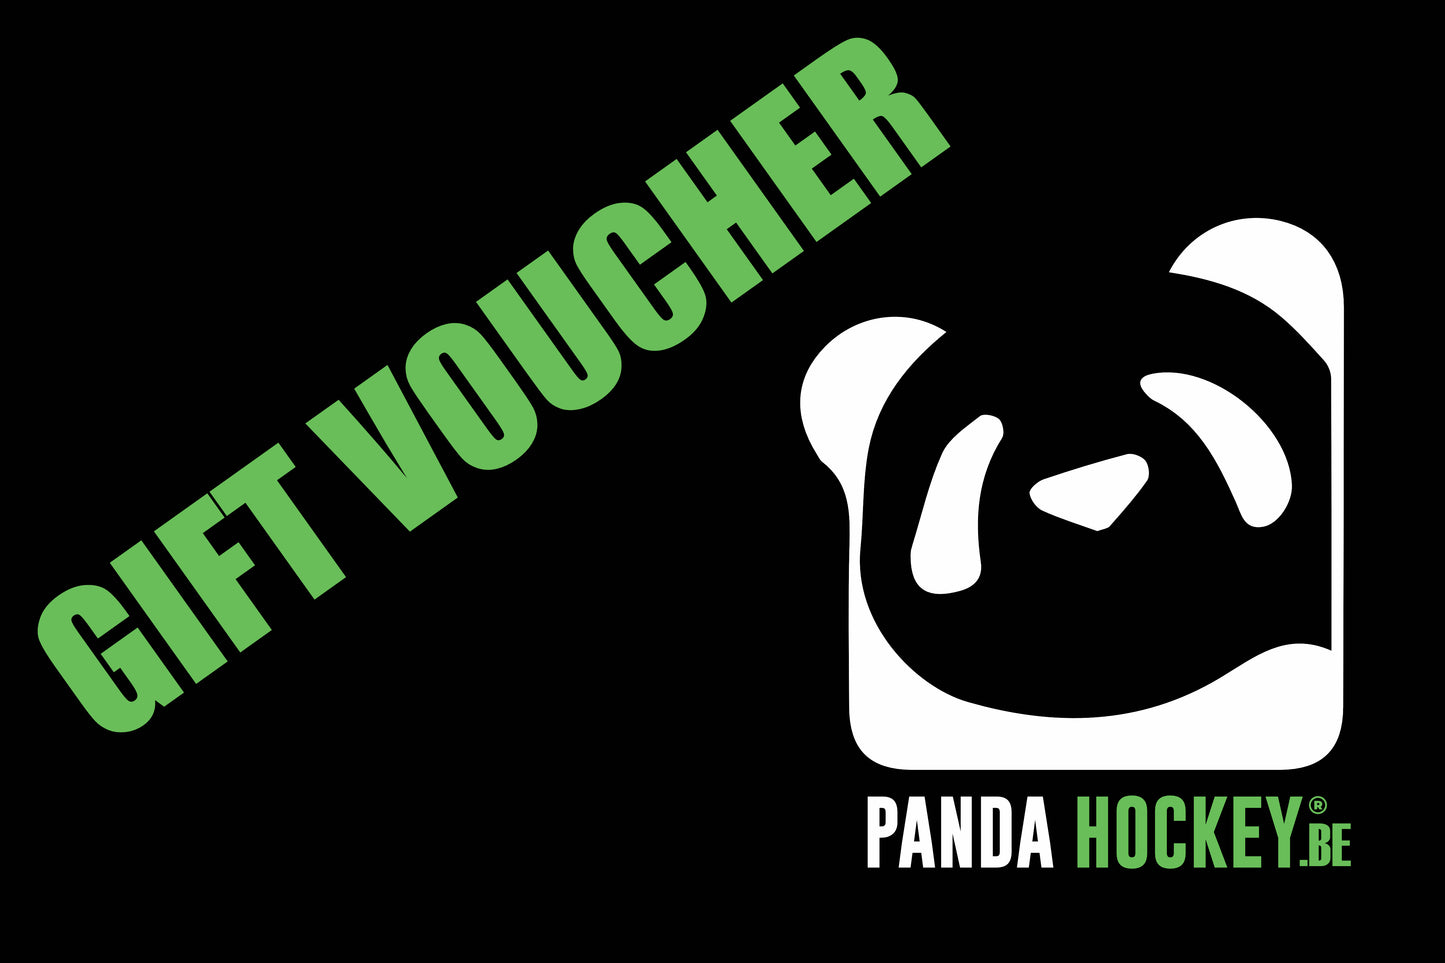 Panda Hockey Gift Voucher